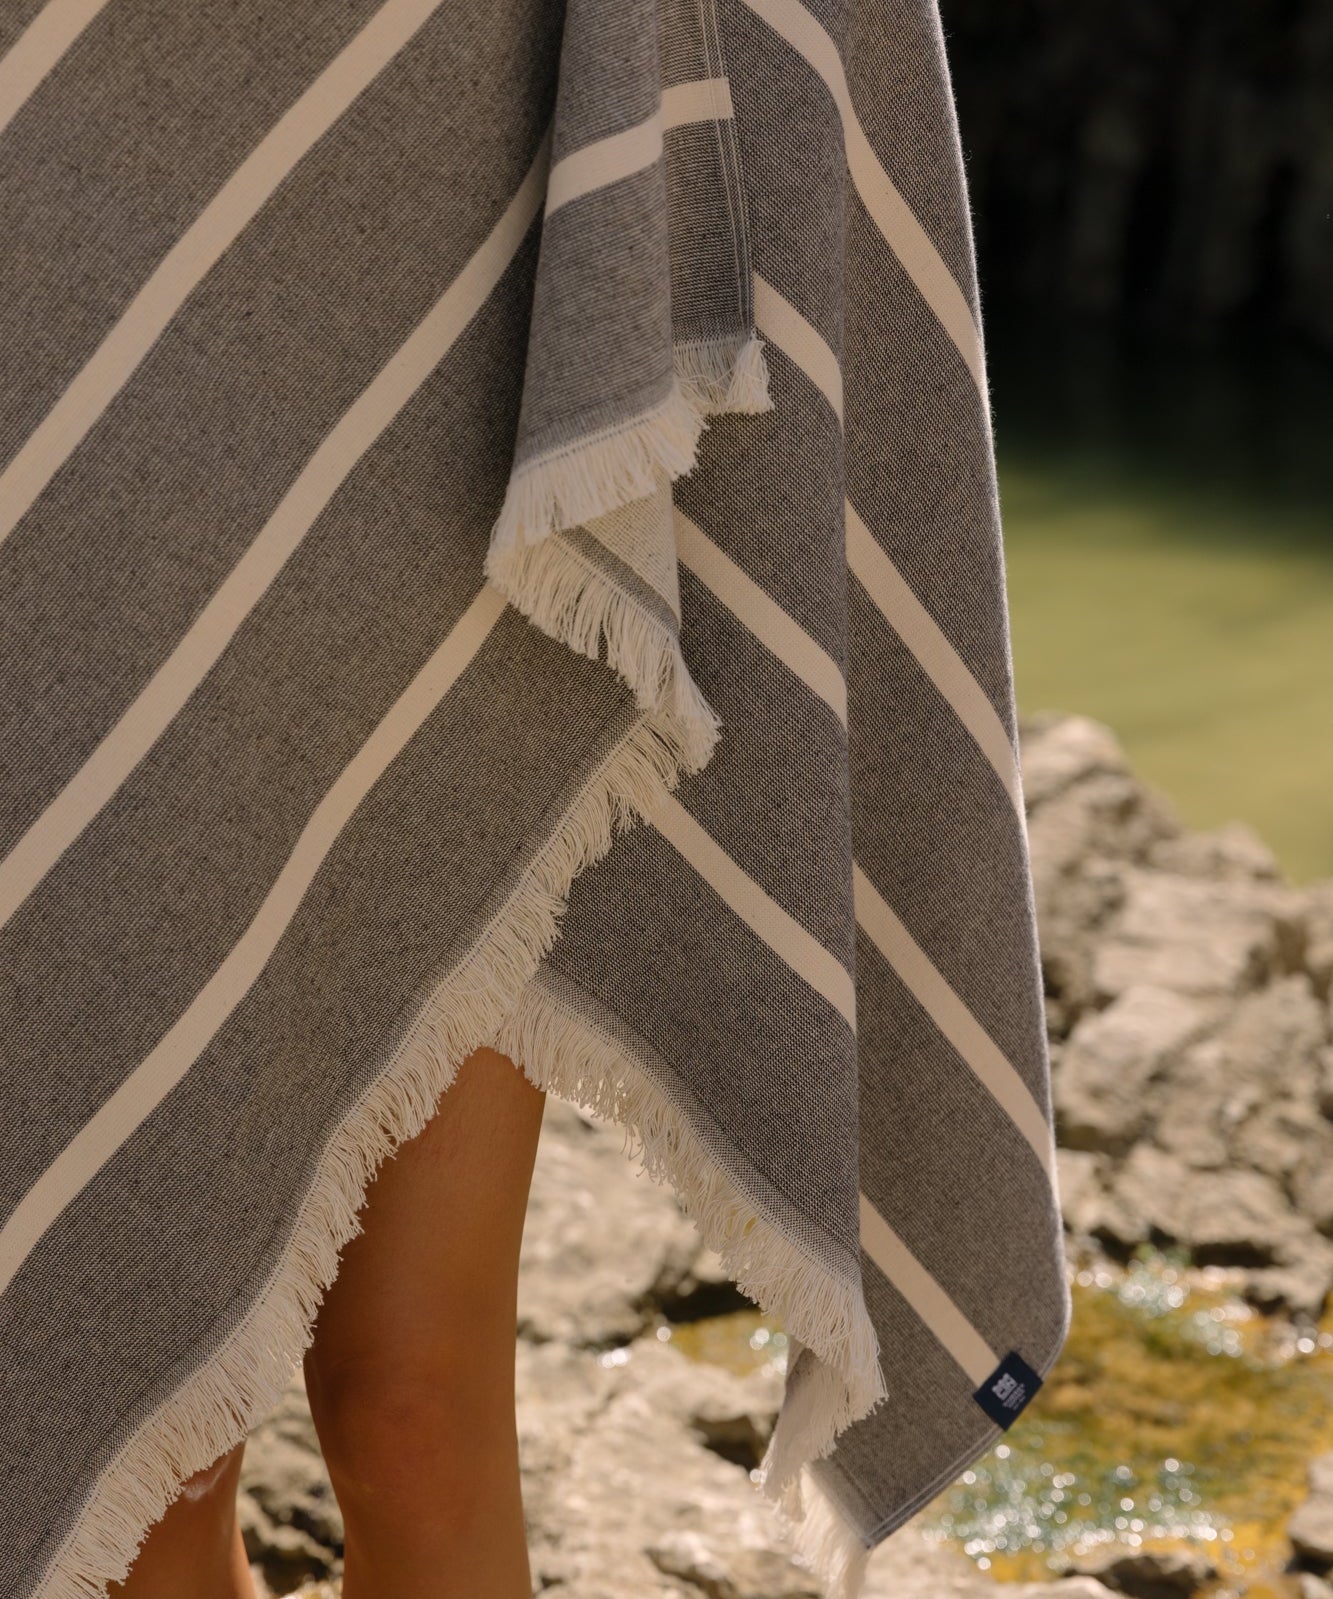 torres-novas-belem-beach-towels-horizontal-stripes-product-black-1_0cef65f8-ebfc-4e9d-9234-4e1ca980ef10.jpg